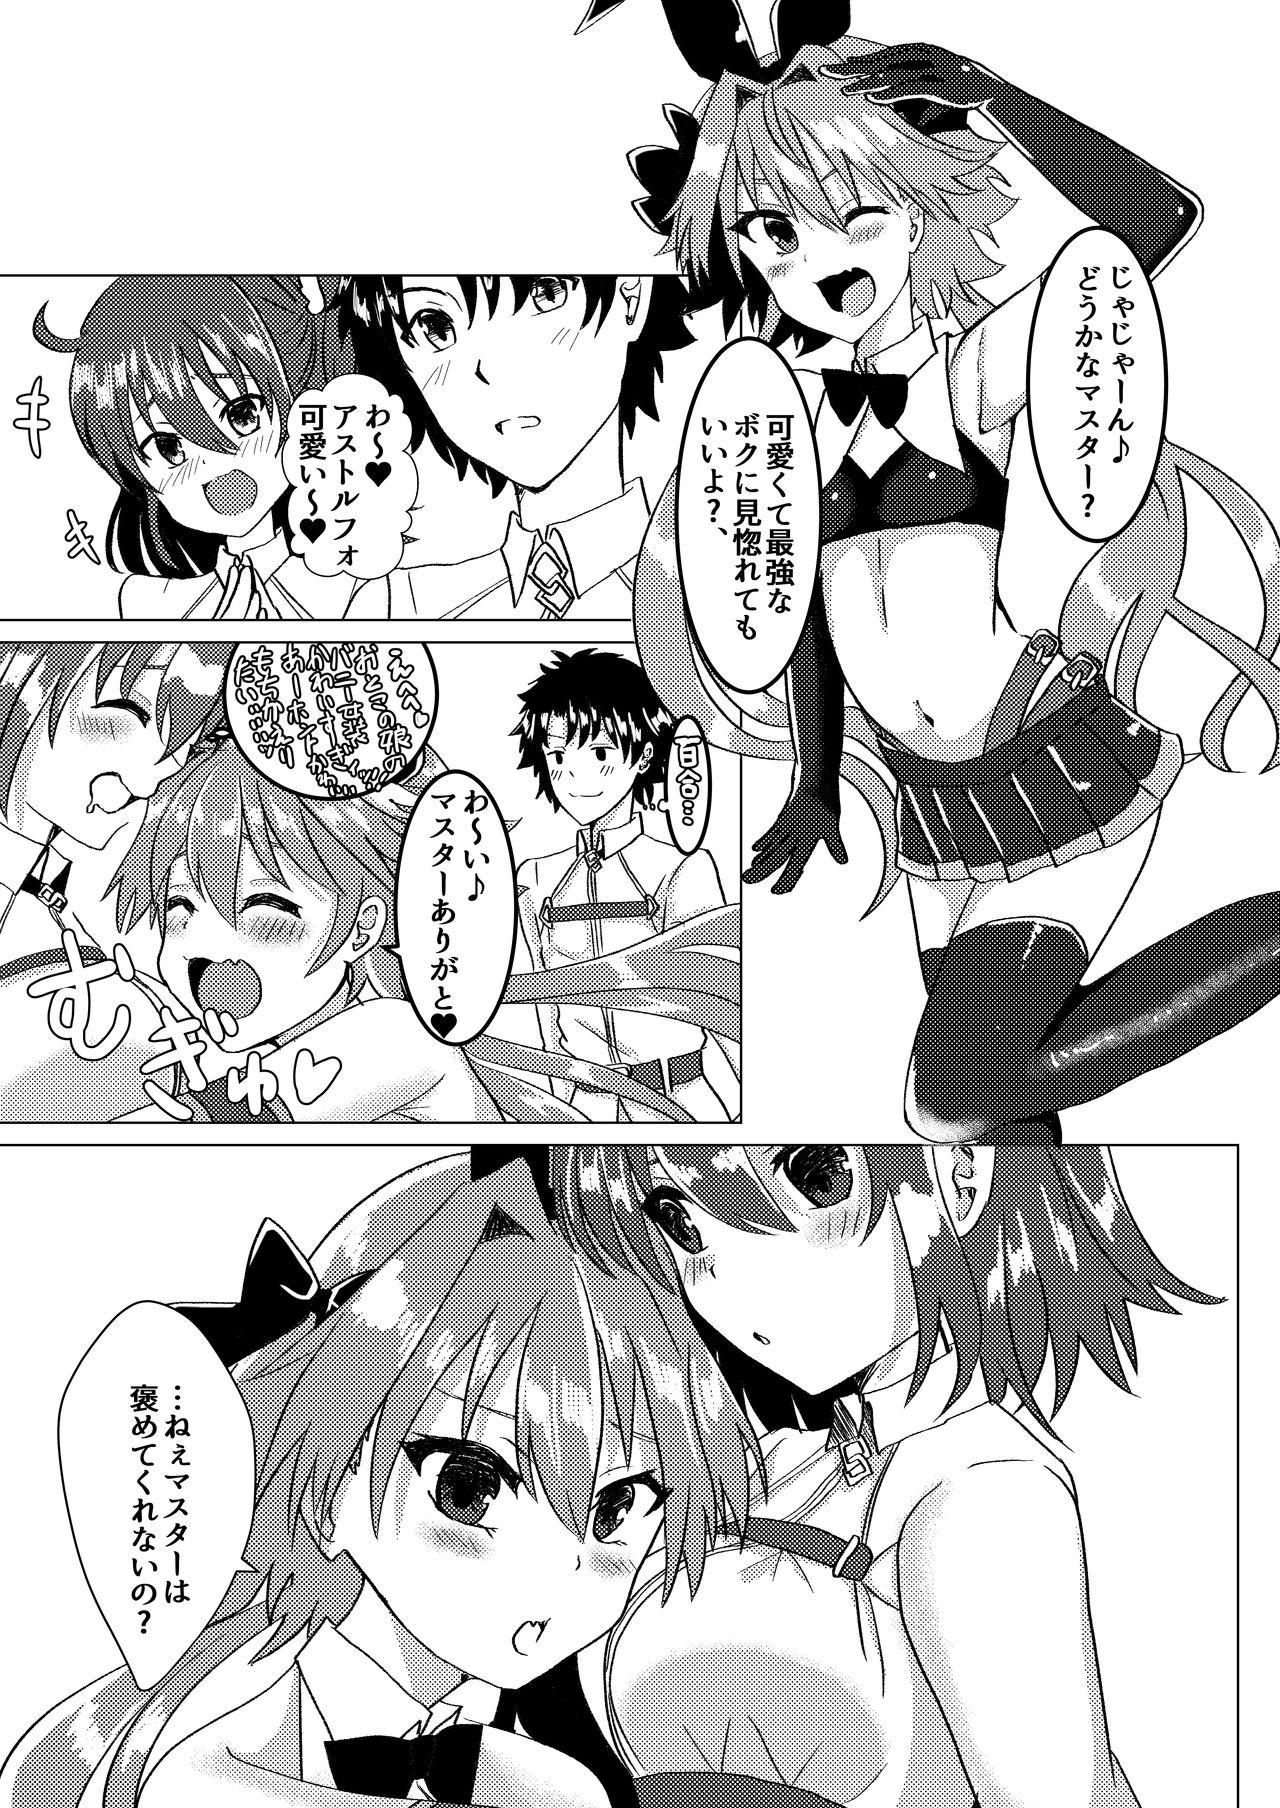 Slutty Ecchi na Otokonoko wa Osuki desu ka? - Fate grand order Hot Milf - Page 2